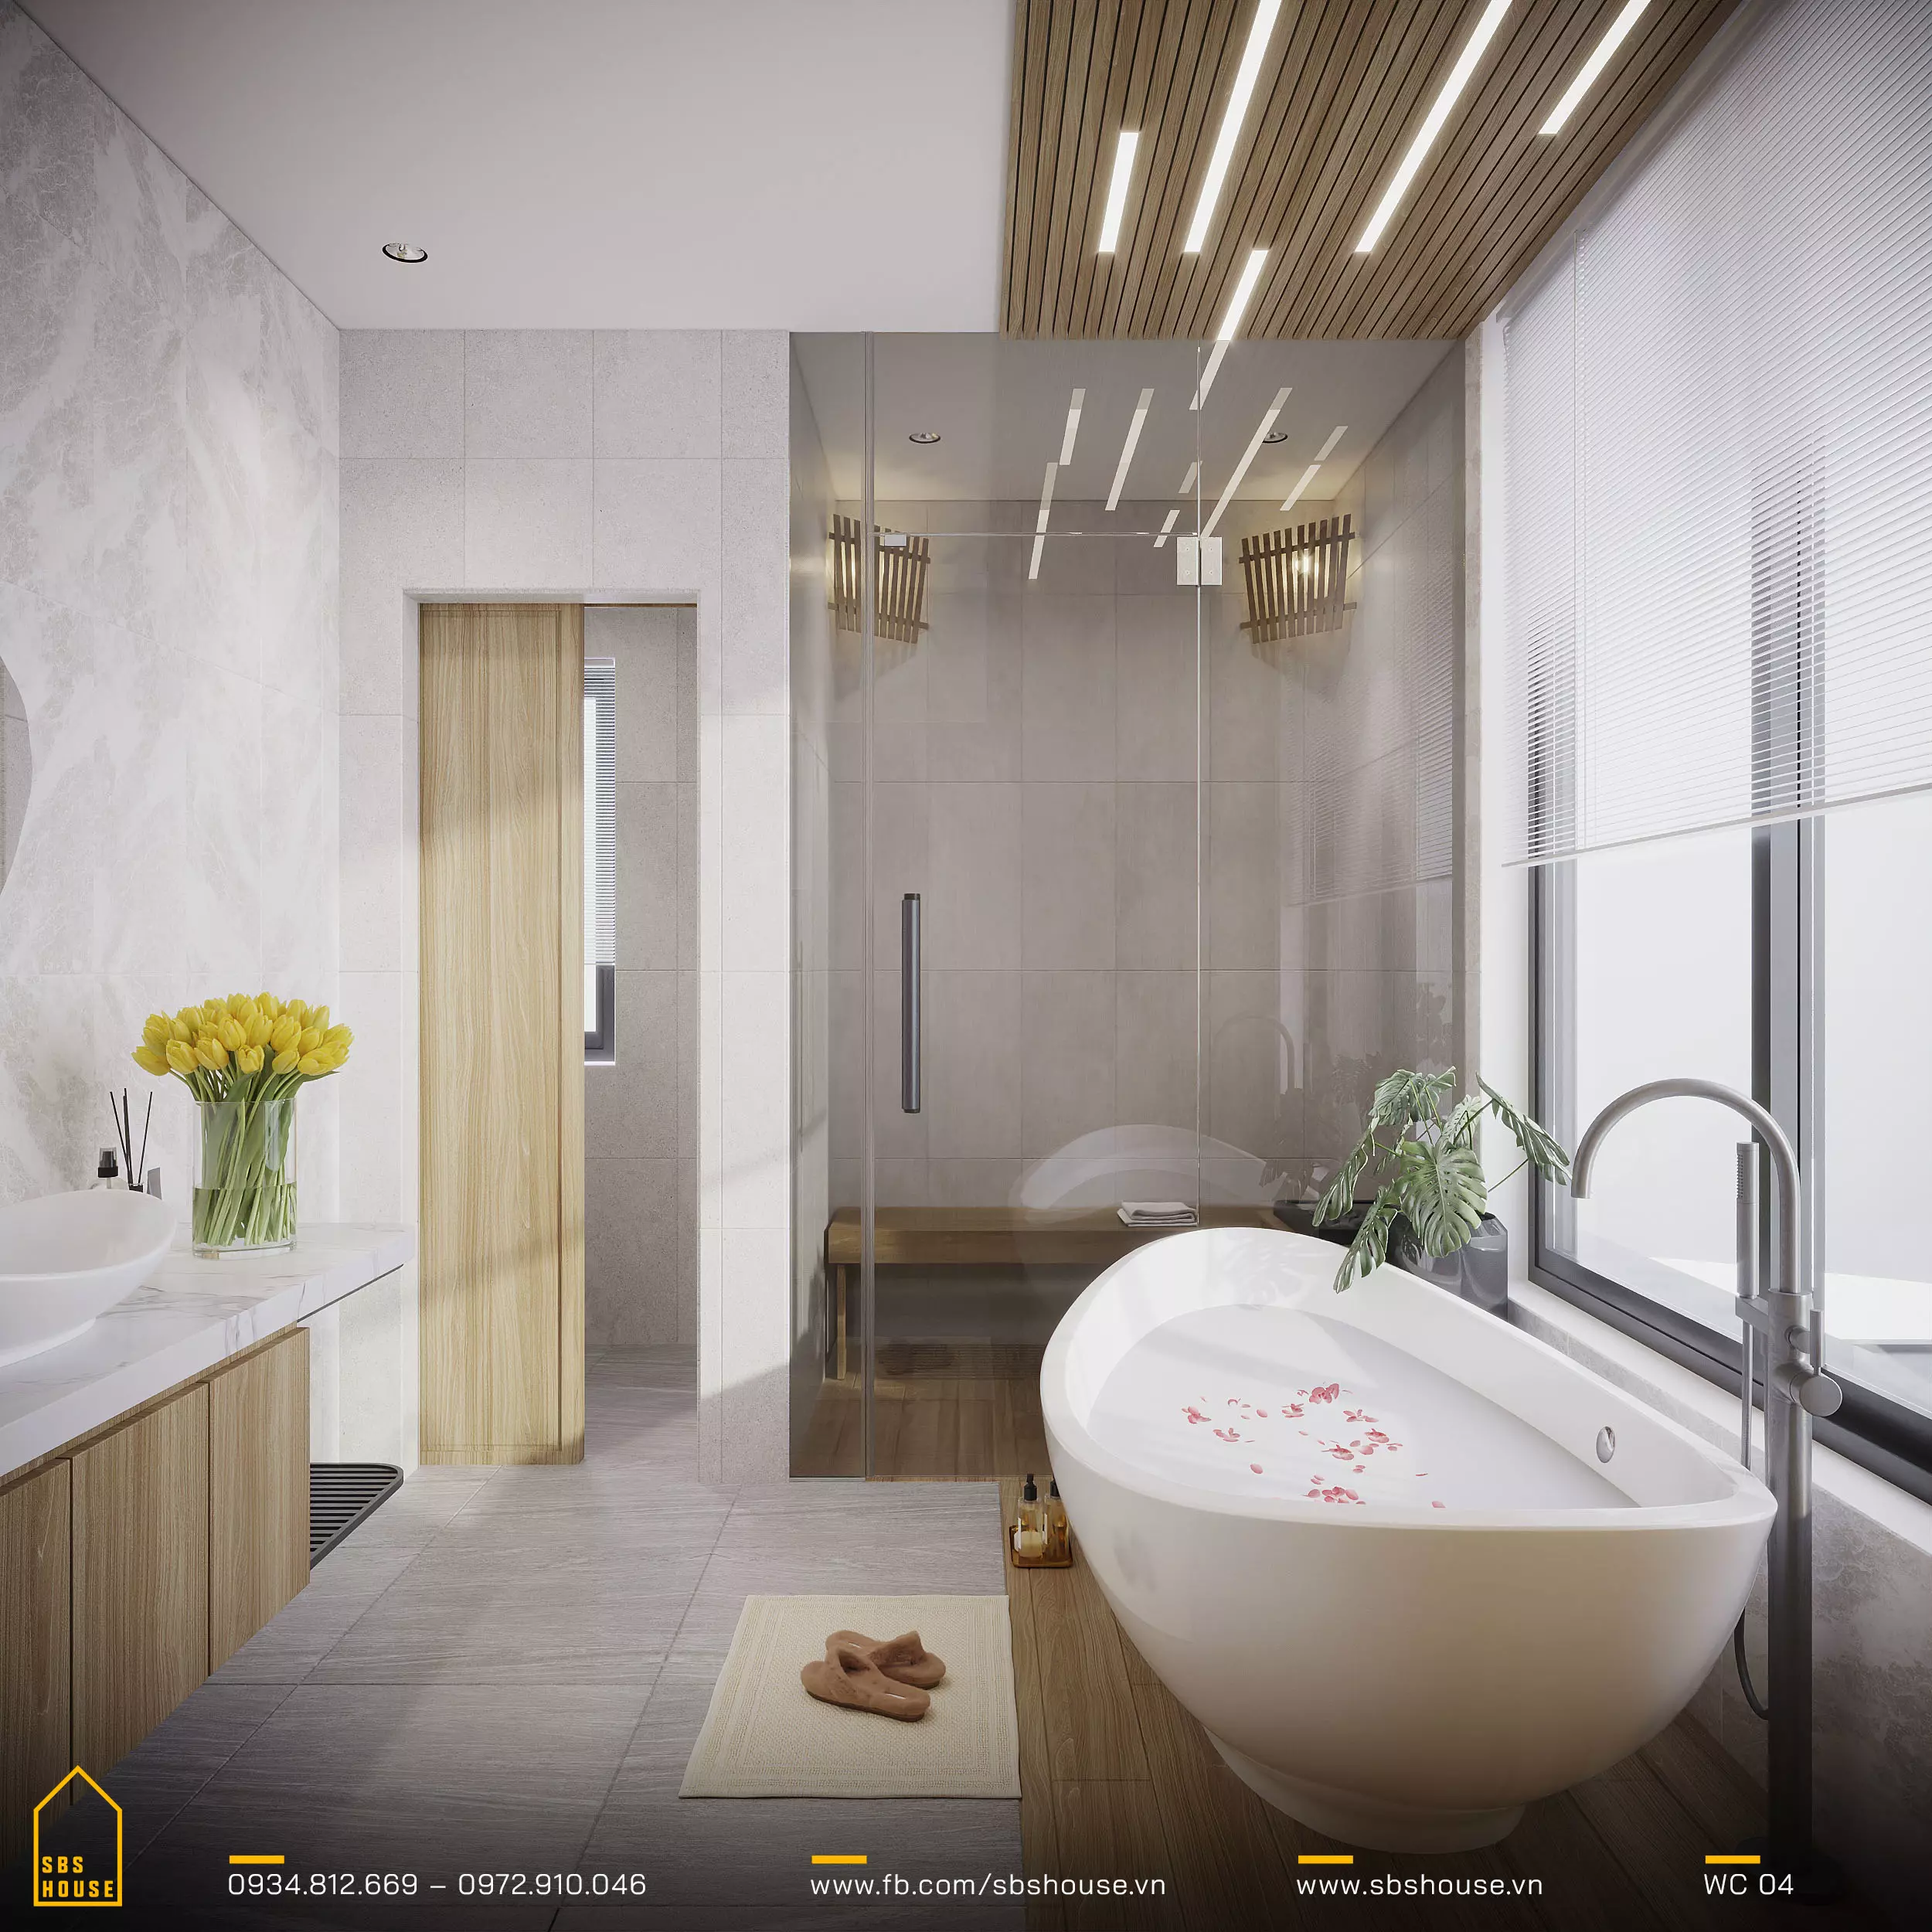 Không gian phòng tắm được thiết kế như một spa, gia chủ có thể thư giãn trong bồn tắm của mình. Không gian sống thanh lịch và tối giản, nơi sự yên bình được tôn lên bởi ánh sáng tự nhiên tràn ngập